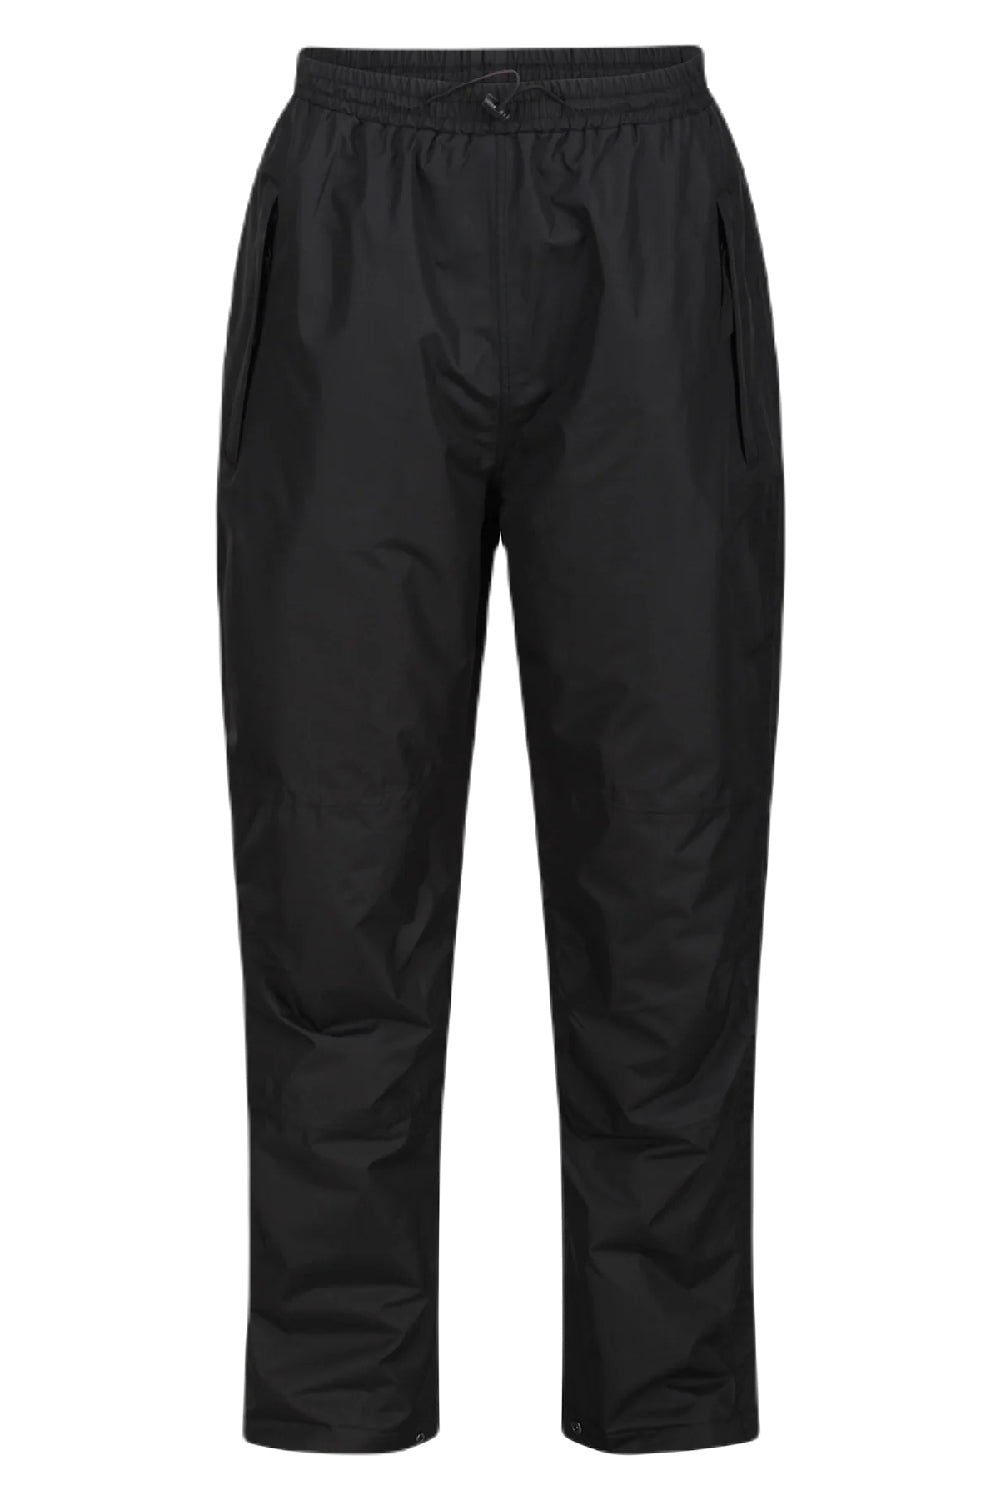 Regatta Wetherby Navy Waterproof Overtrousers, Regatta, Work Trousers